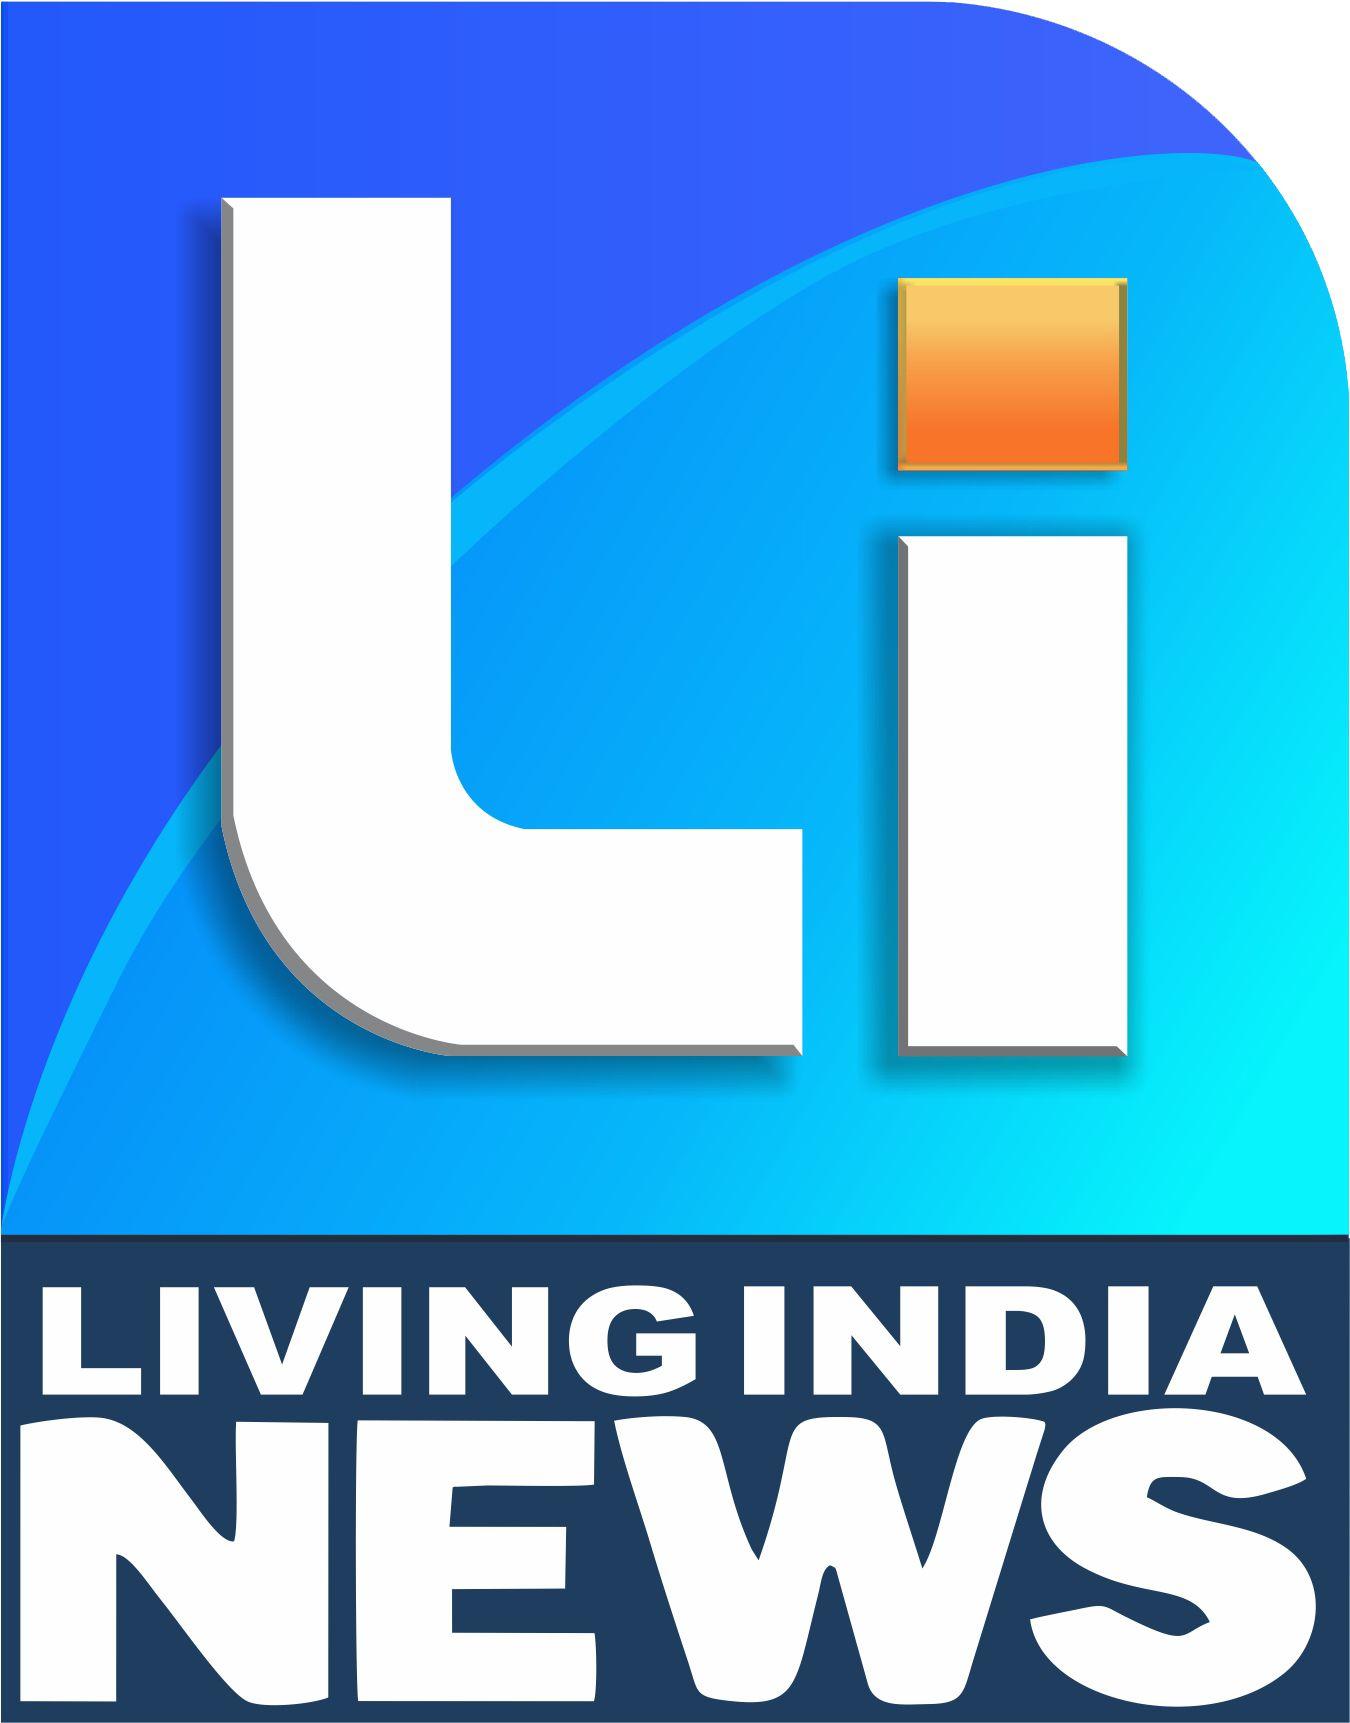 News Channel Logo - Living india news channel logo | KARYTV